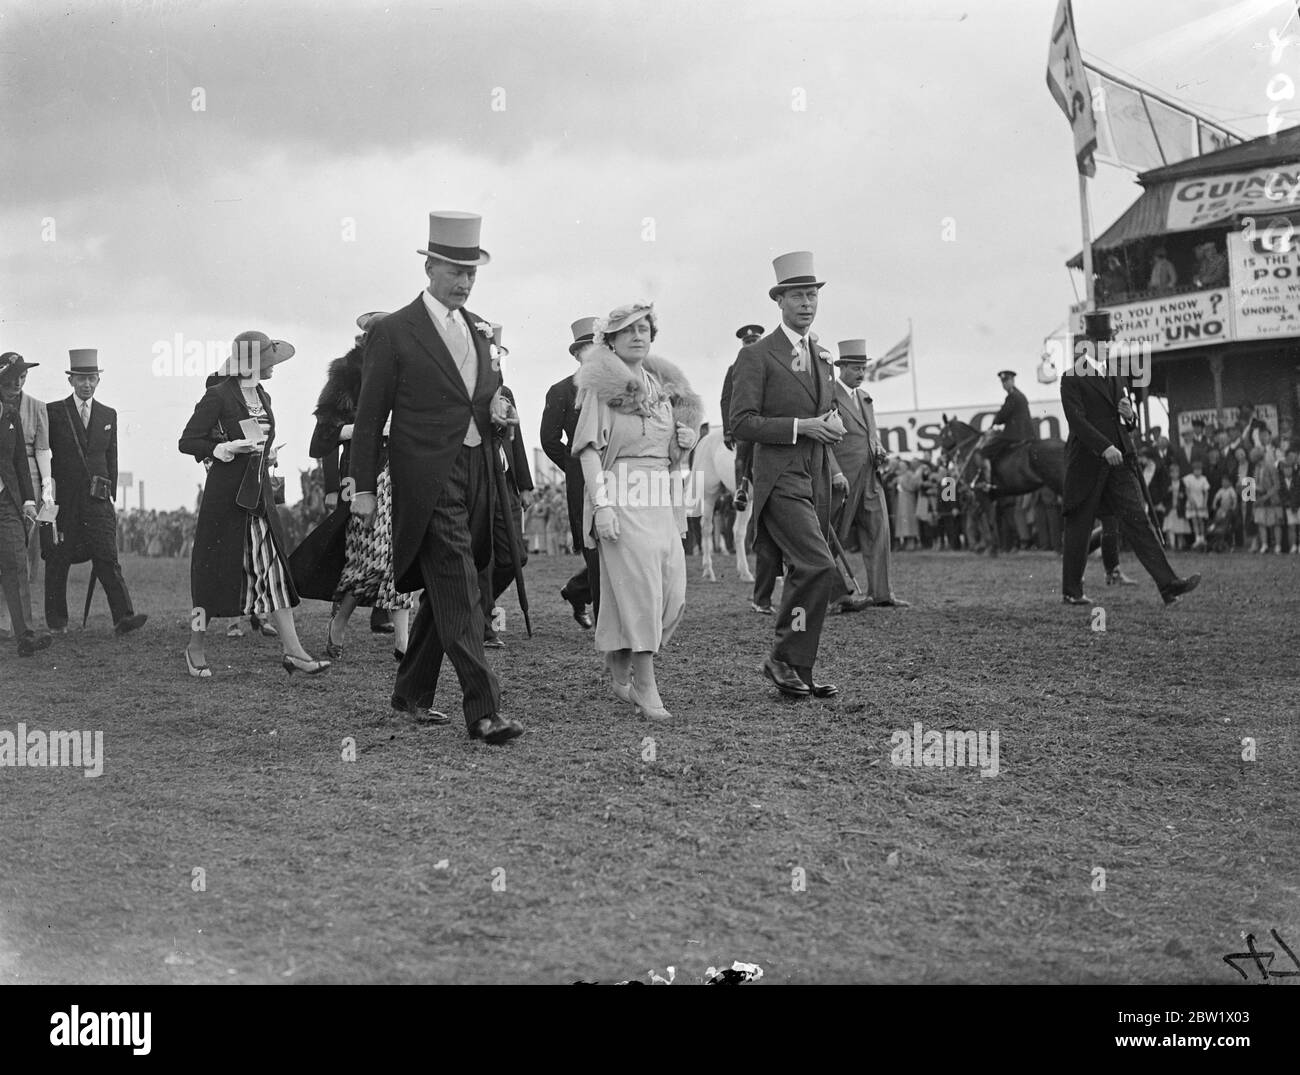 King et Queen marchaient jusqu'au paddock à Epsom le jour de Oaks. Le Roi et la Reine, en payant une deuxième visite en trois jours, ils peuvent marcher sur le parcours d'Epsom jusqu'au paddock avant le début des Oaks. Spectacles photo, le roi et la reine marchant jusqu'au paddock à Epsom. 4 juin 1937 Banque D'Images